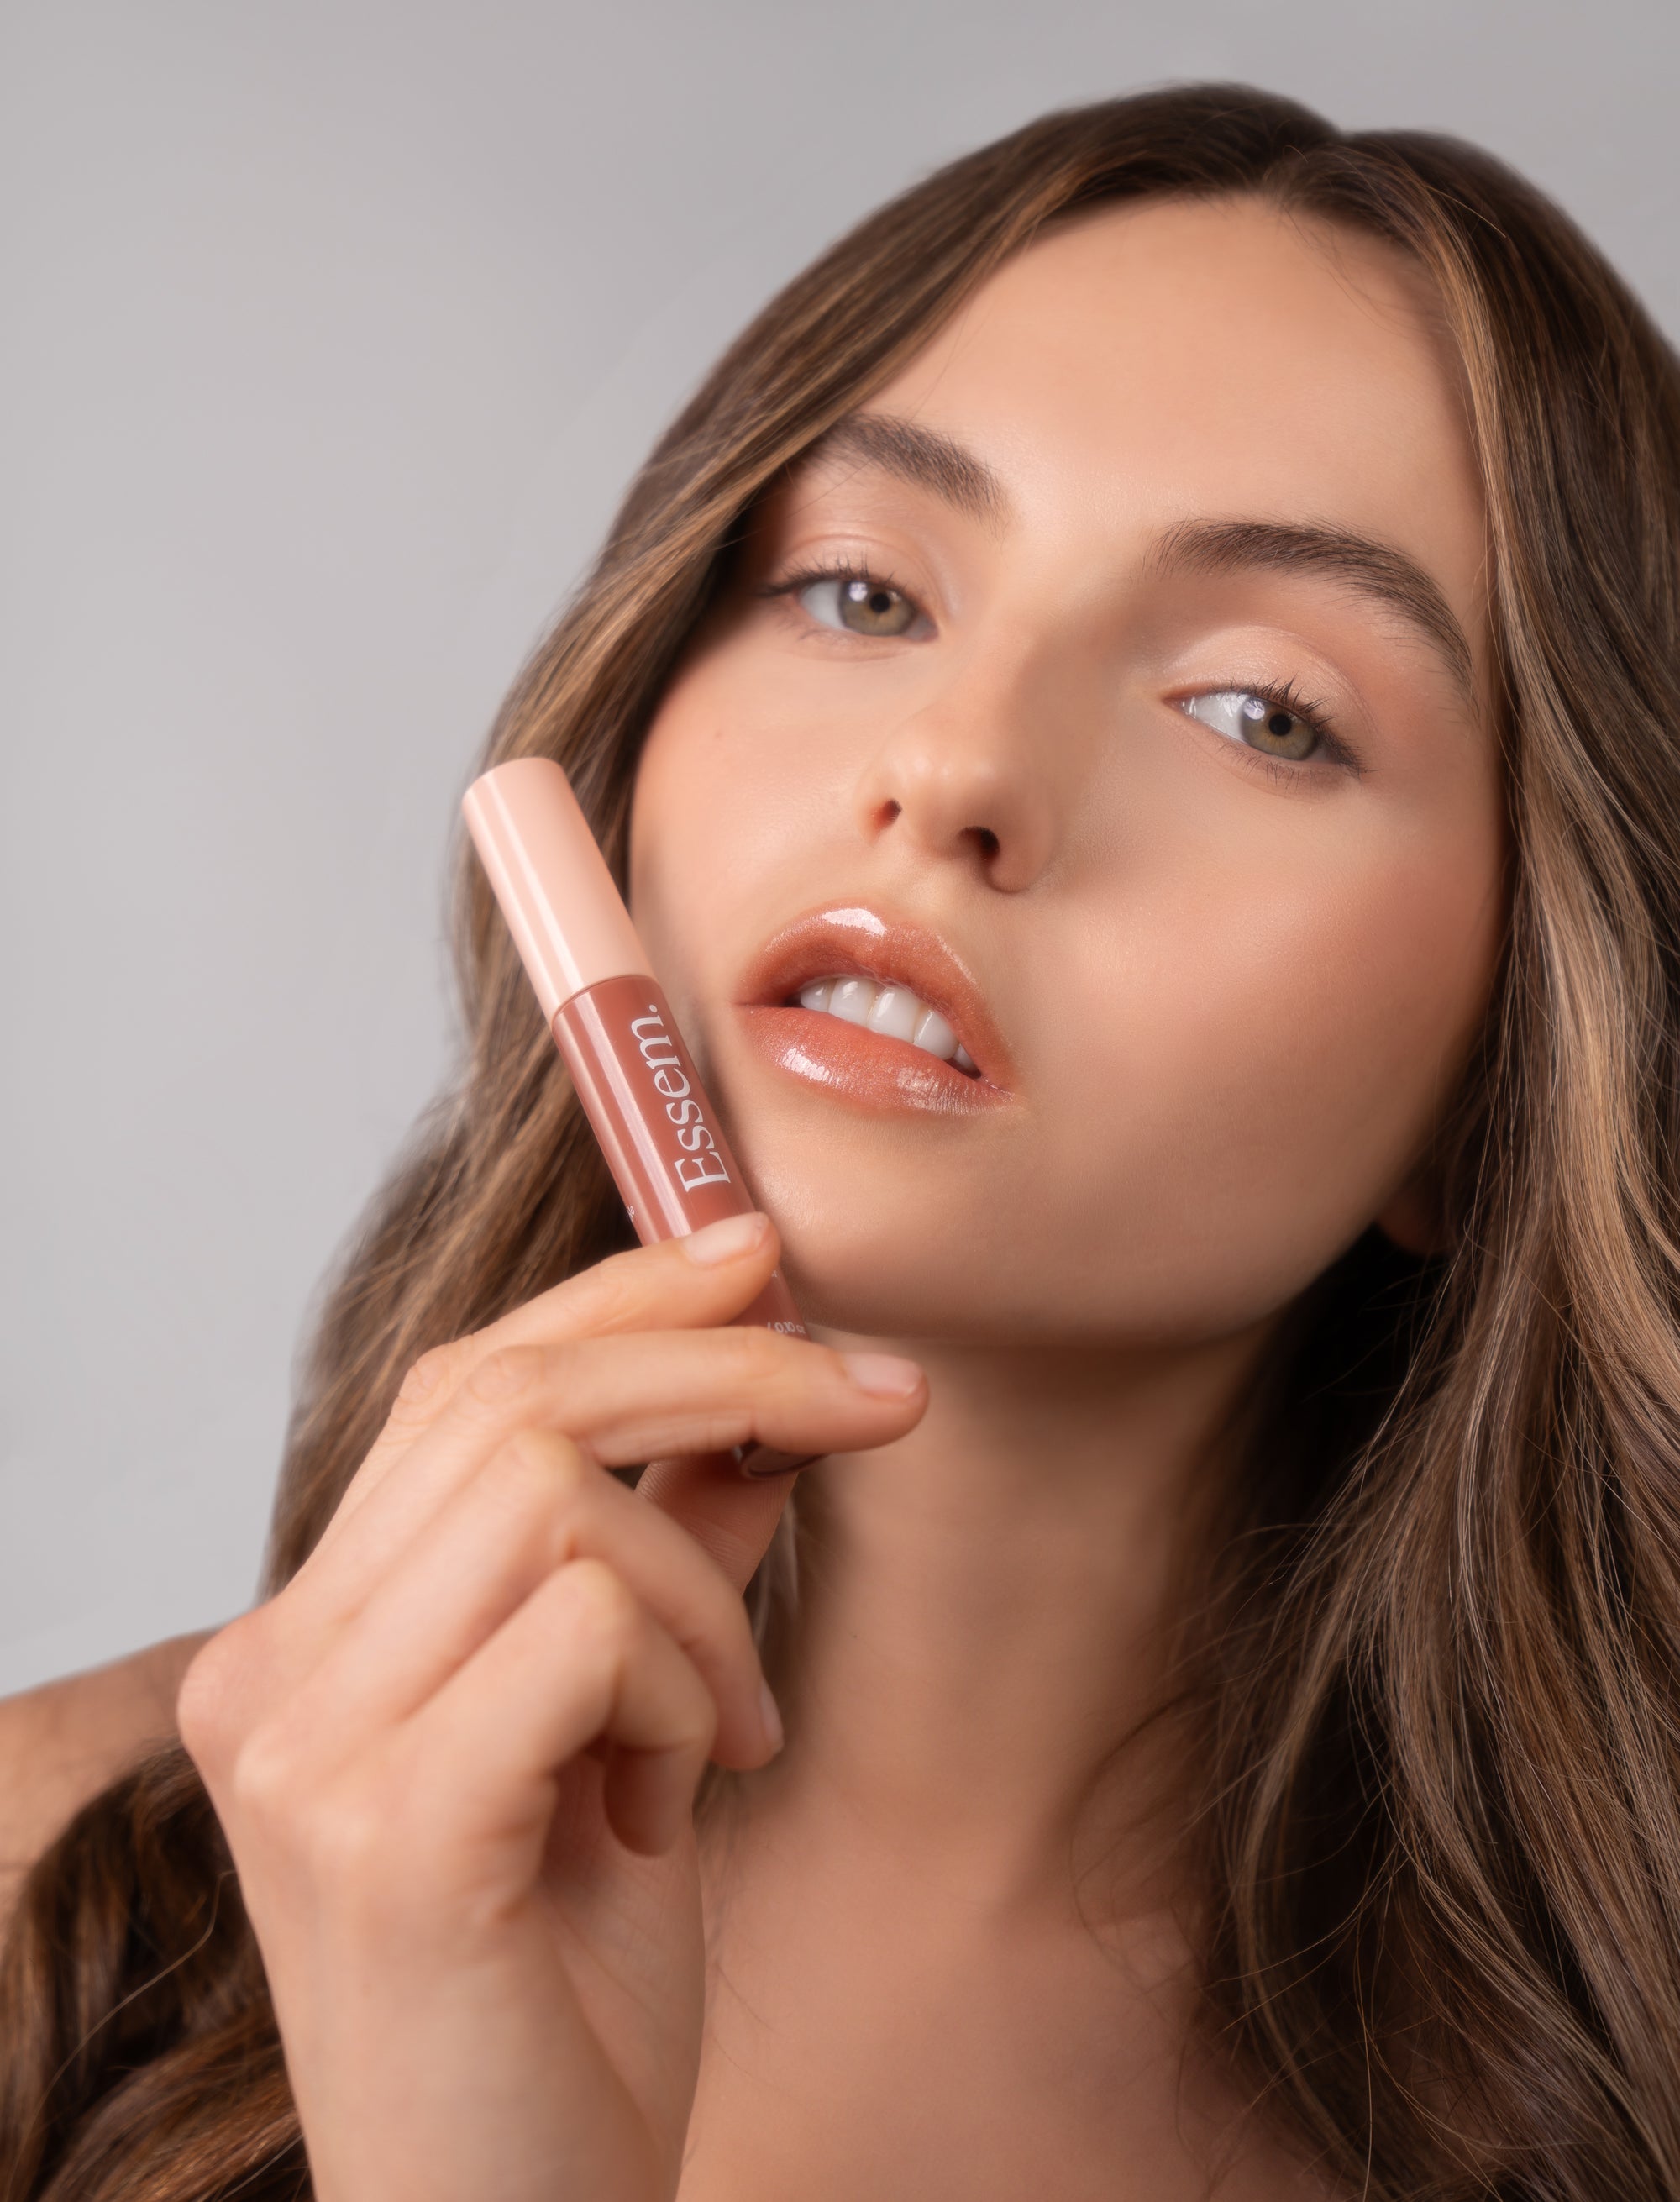 Serum Lip Gloss With Color Essem Skincare